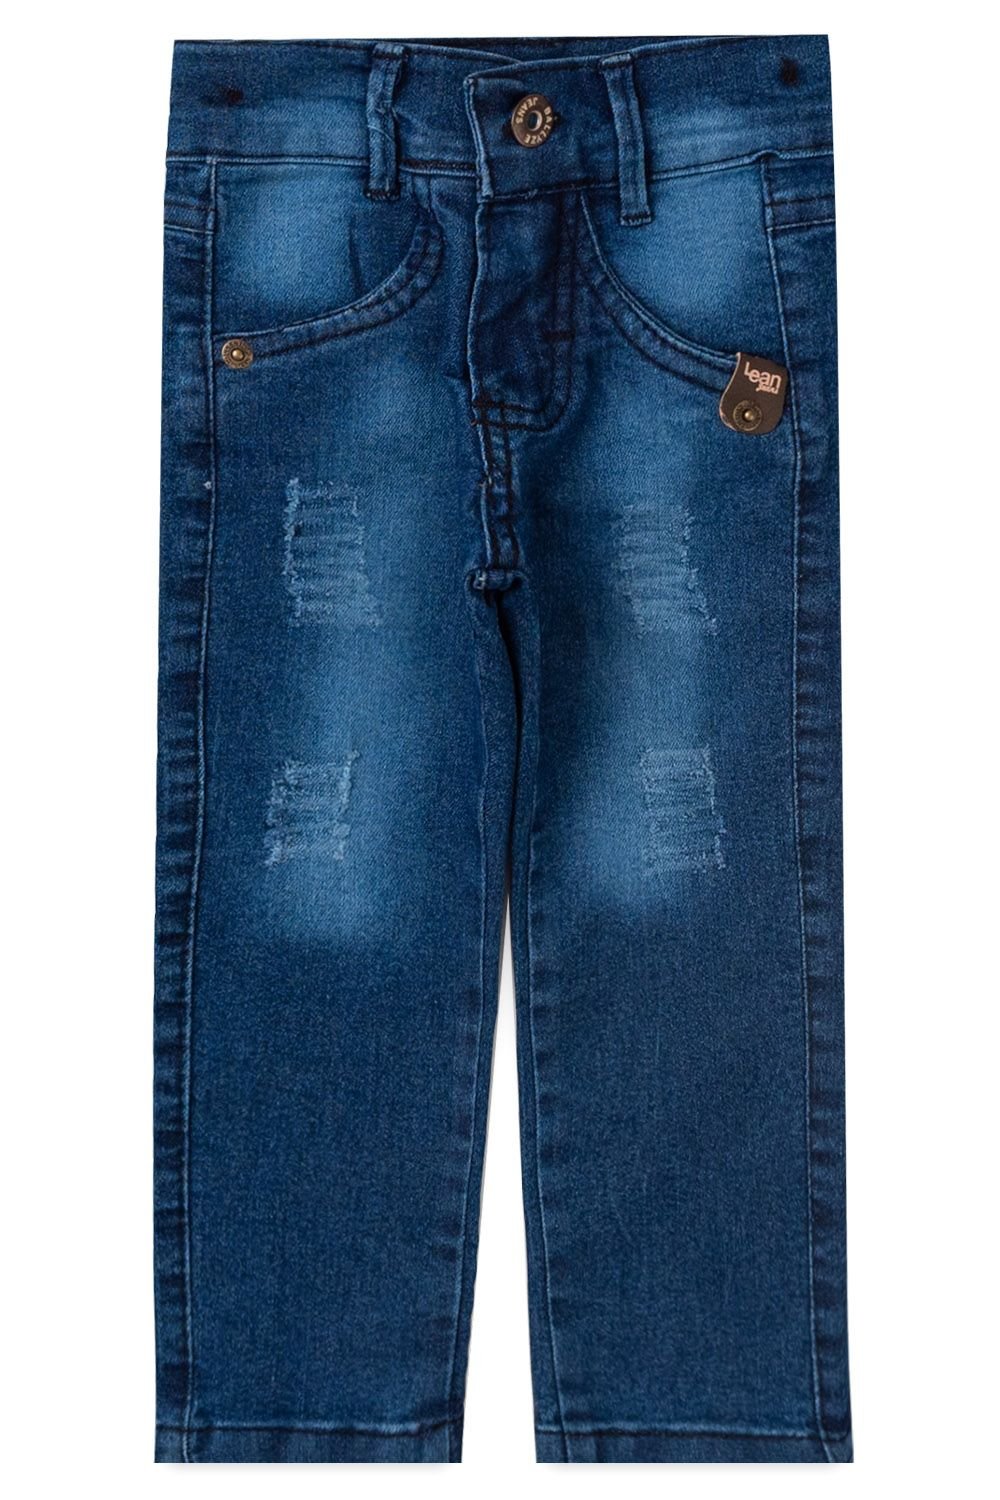 Calça Jeans Feminina Básica Cintura Alta com Cinto Faixa - Atacado 44.